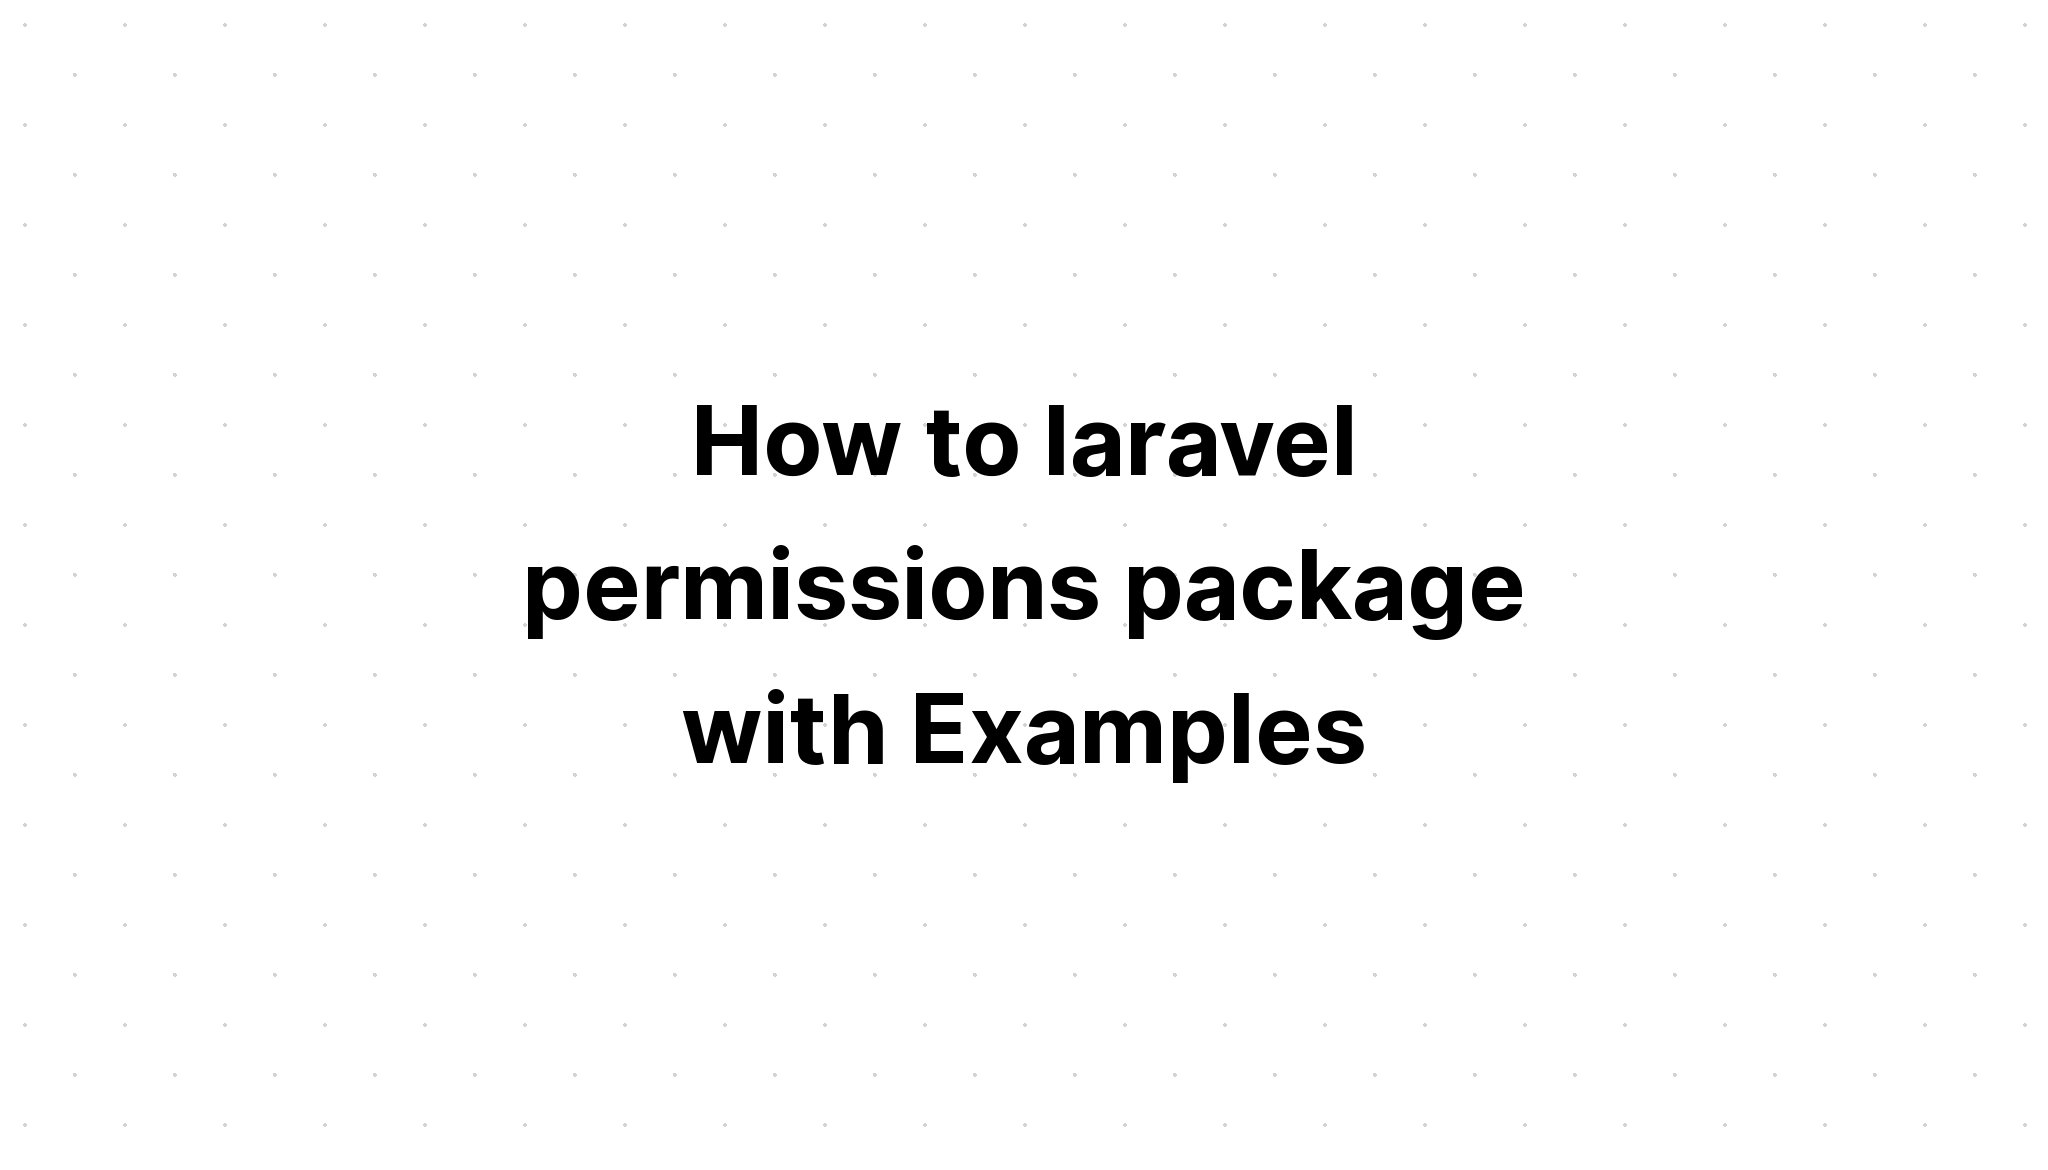 Cách gói quyền laravel với các ví dụ